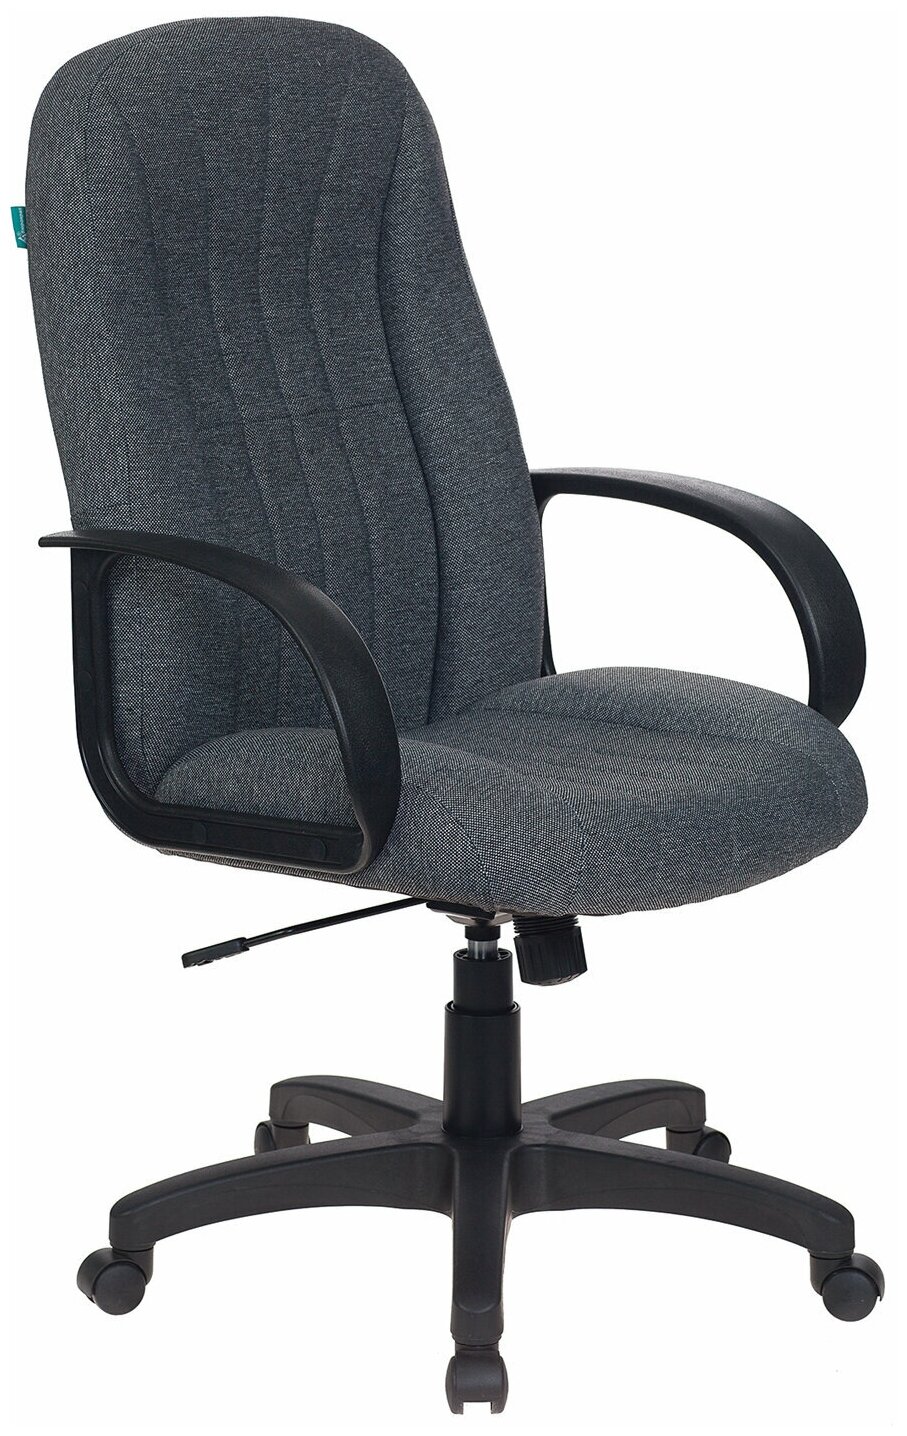 Компьютерное кресло Бюрократ T-898 для руководителя, обивка: текстиль, цвет: серый 3C1